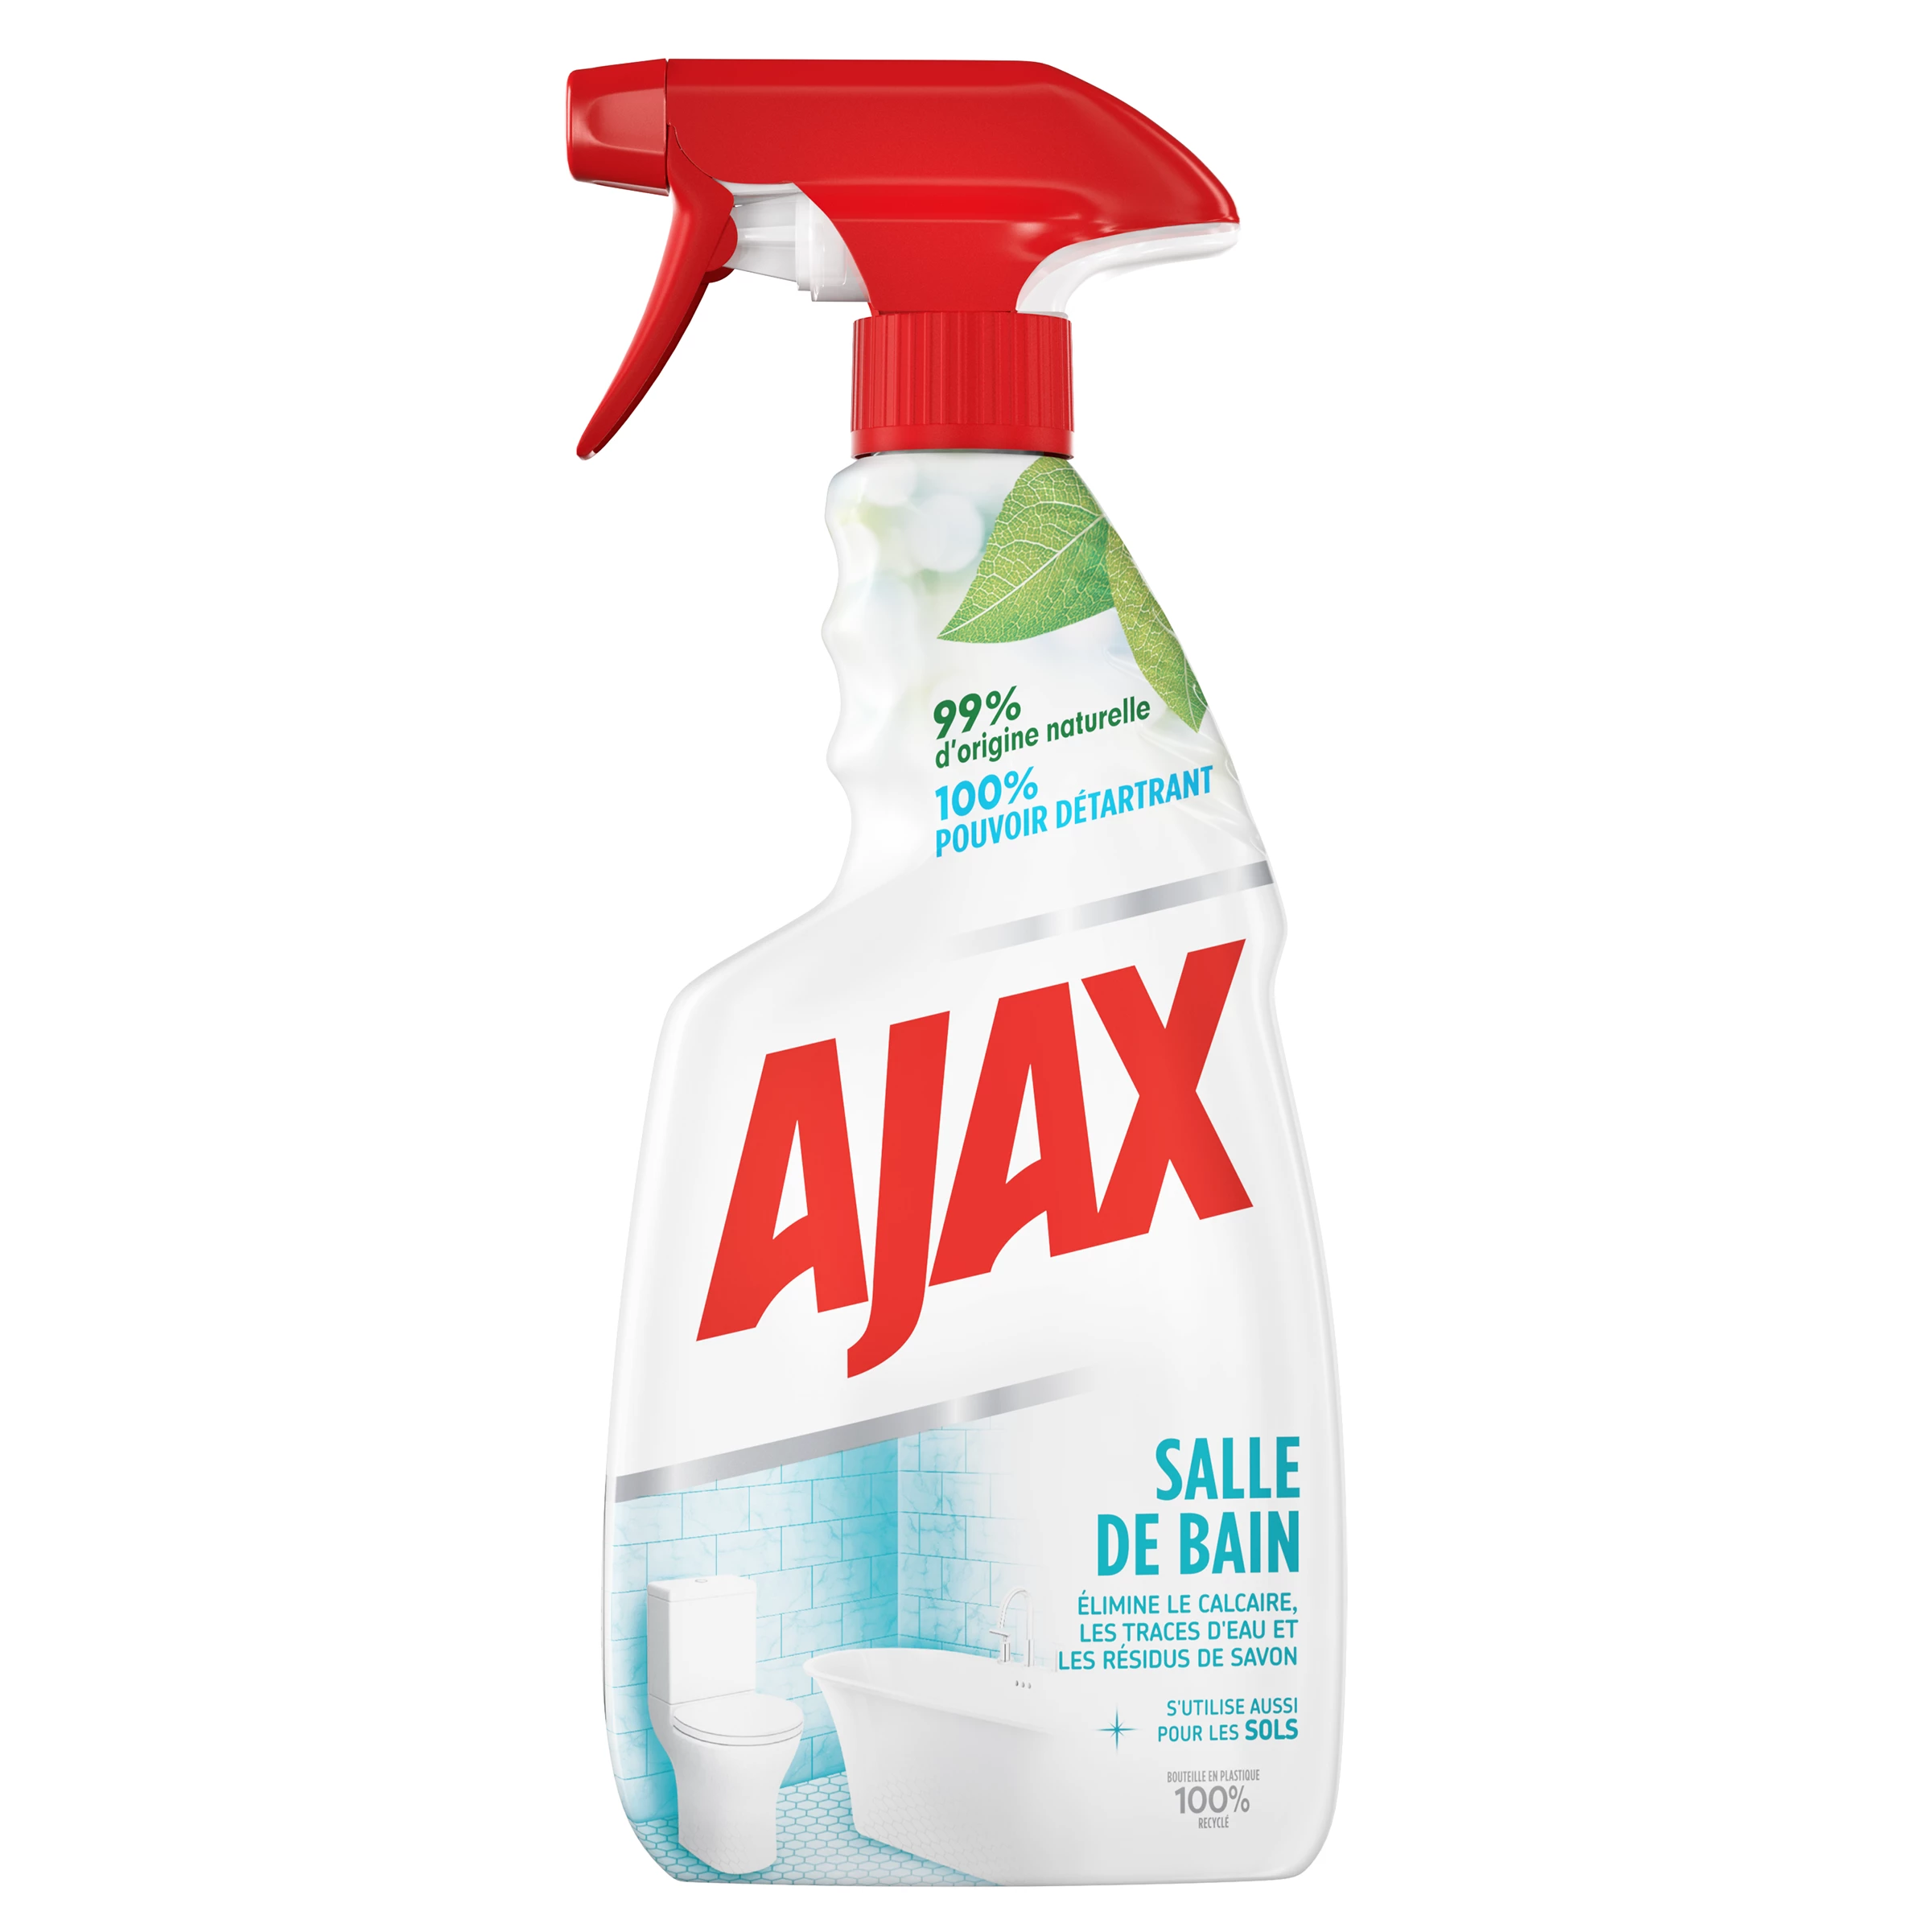 Haushaltsreiniger für mehrere Oberflächen im Badezimmer - AJAX